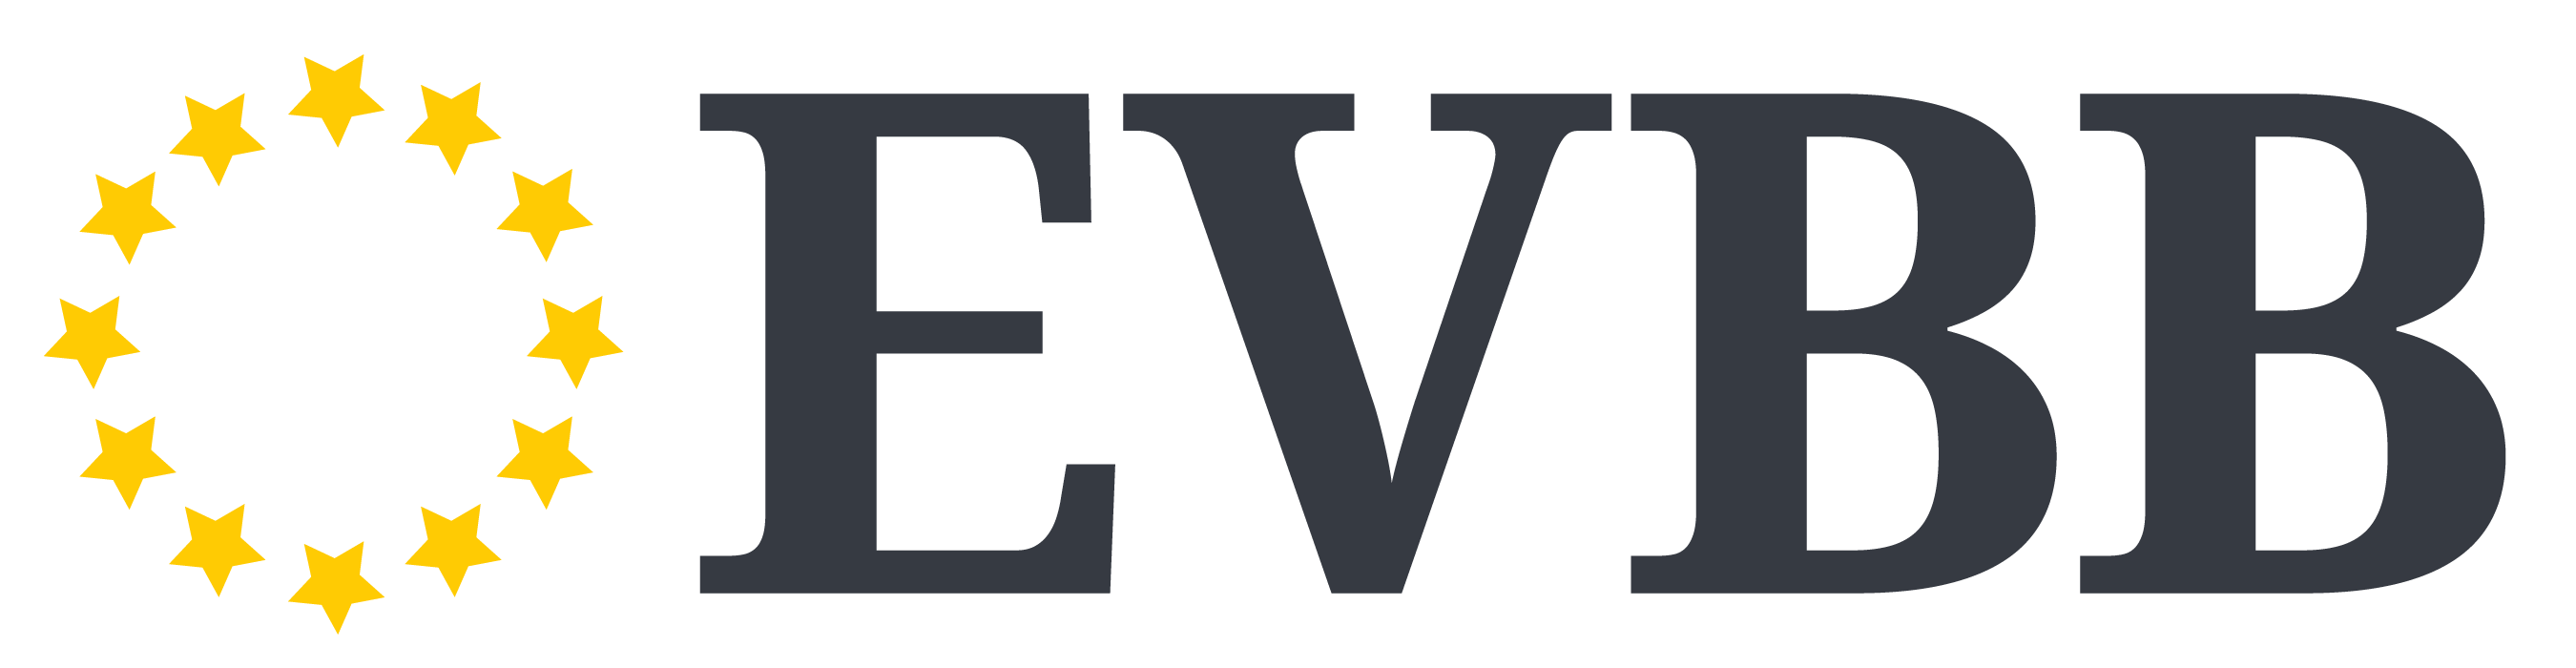 EVBB Logo short